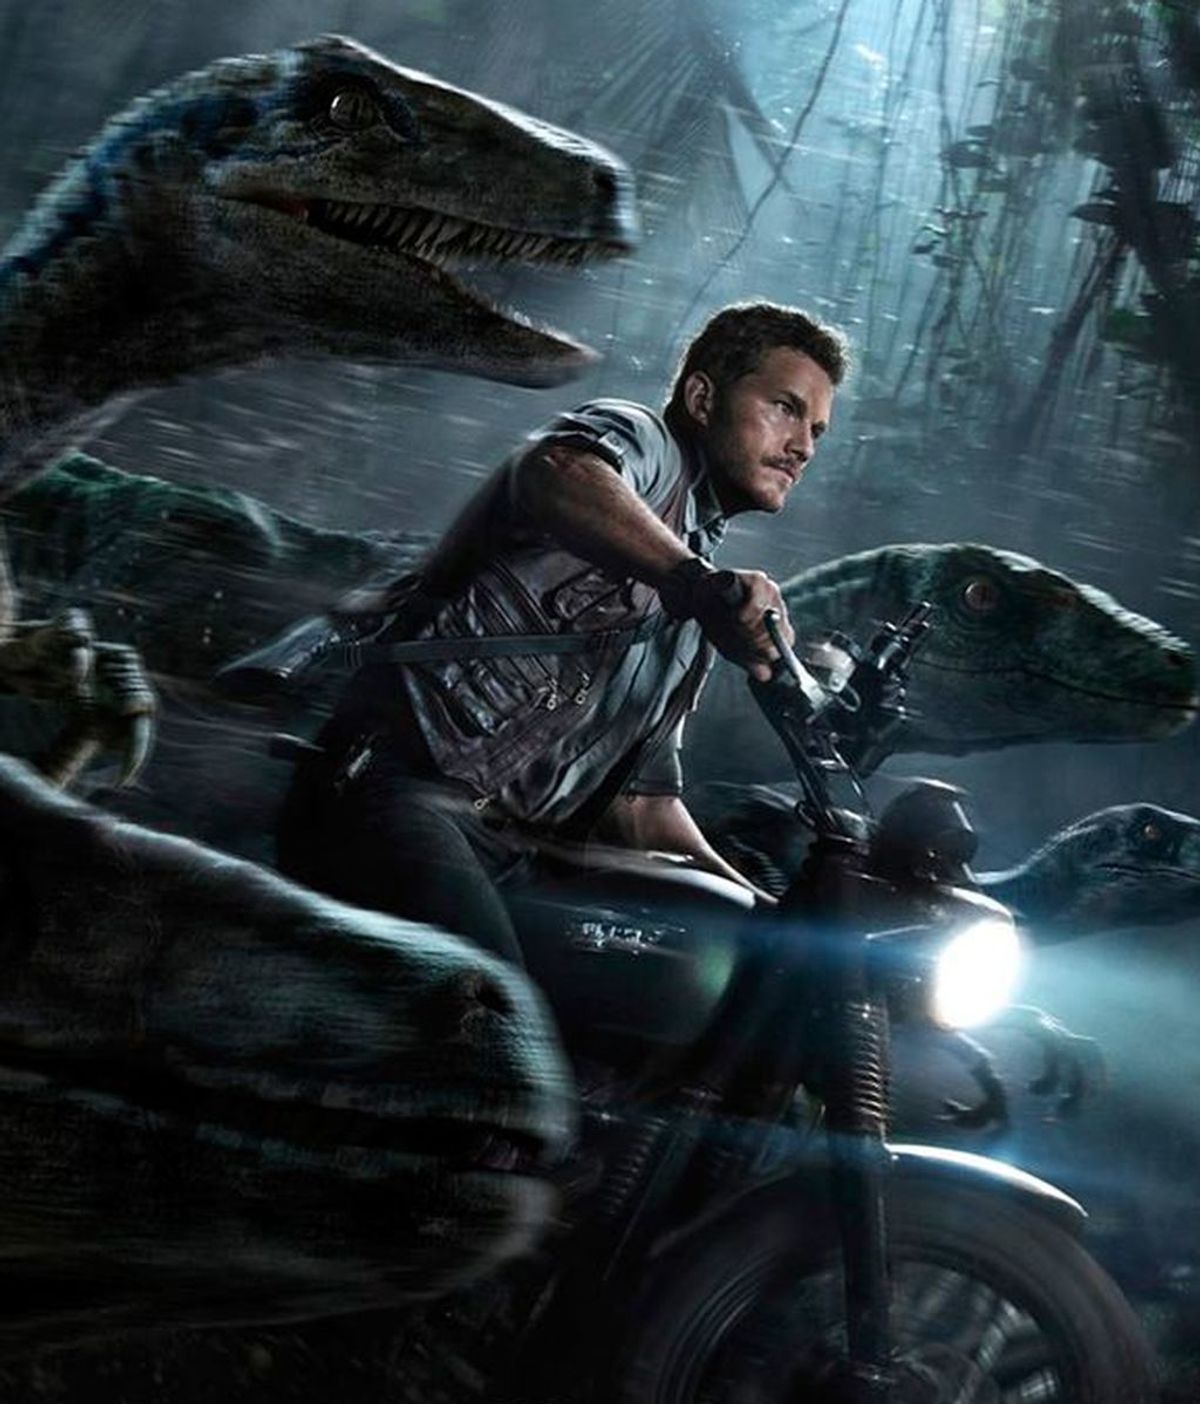 Diez motivos para ver 'Jurassic World' y escapar del gran dinosaurio